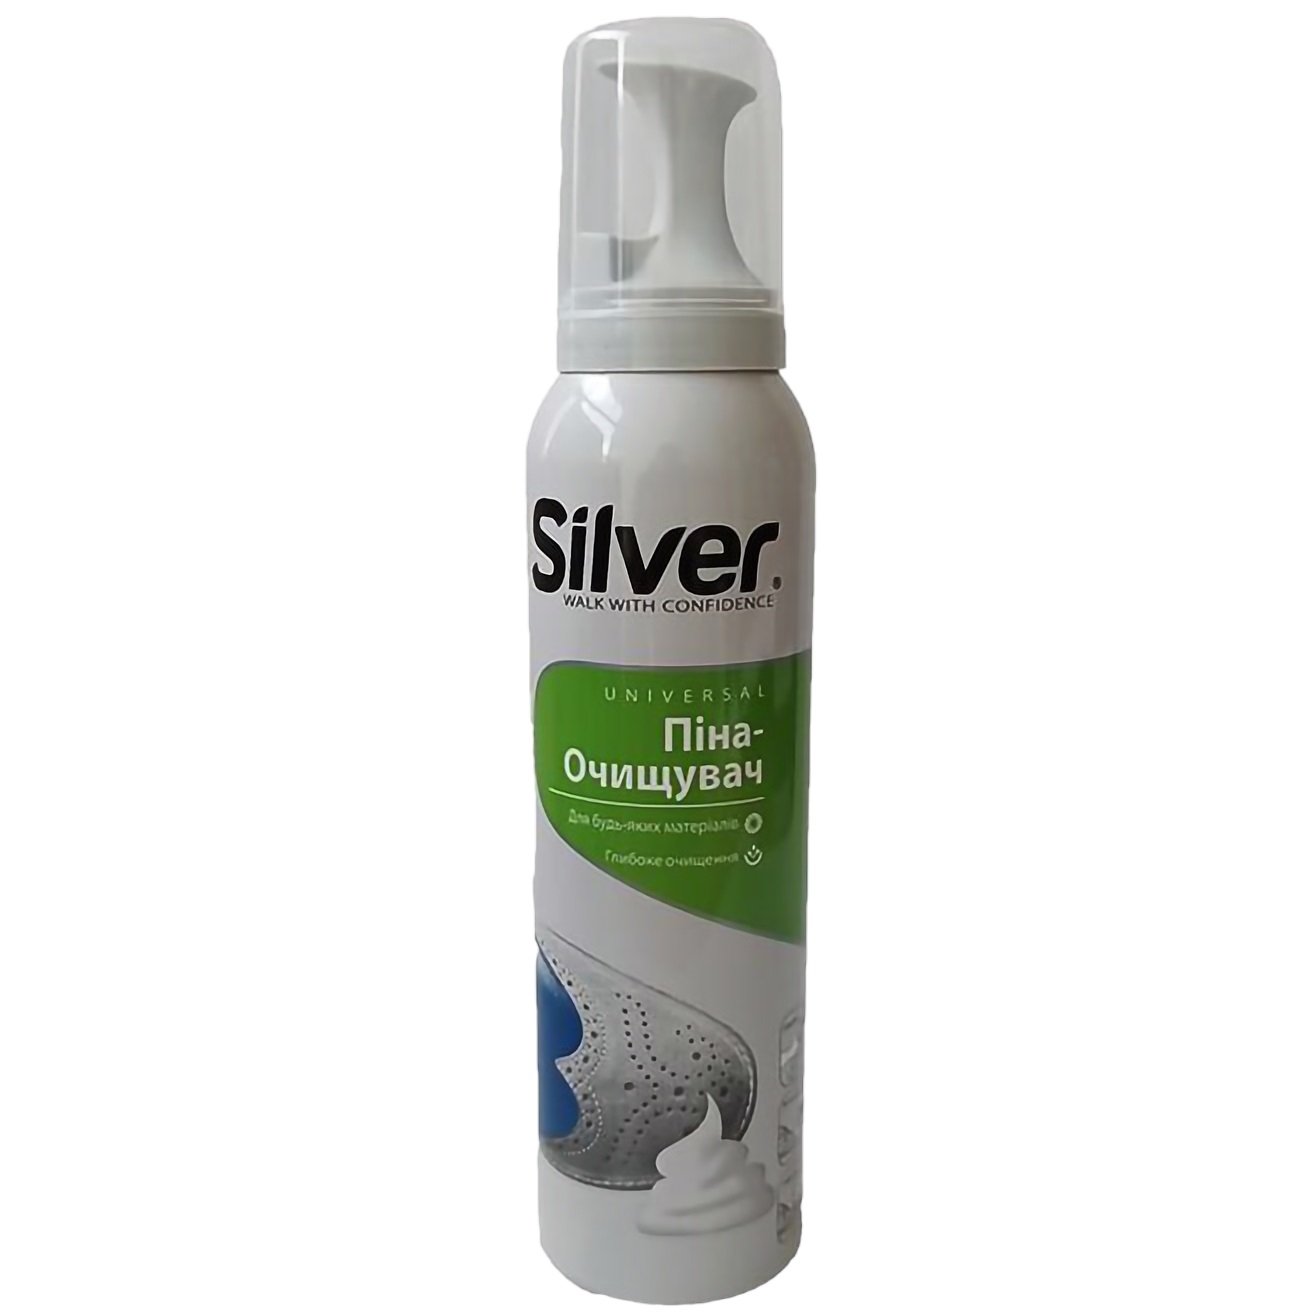 Универсальная пена-очиститель для всех видов кожи и текстиля Silver, 150 мл - фото 2